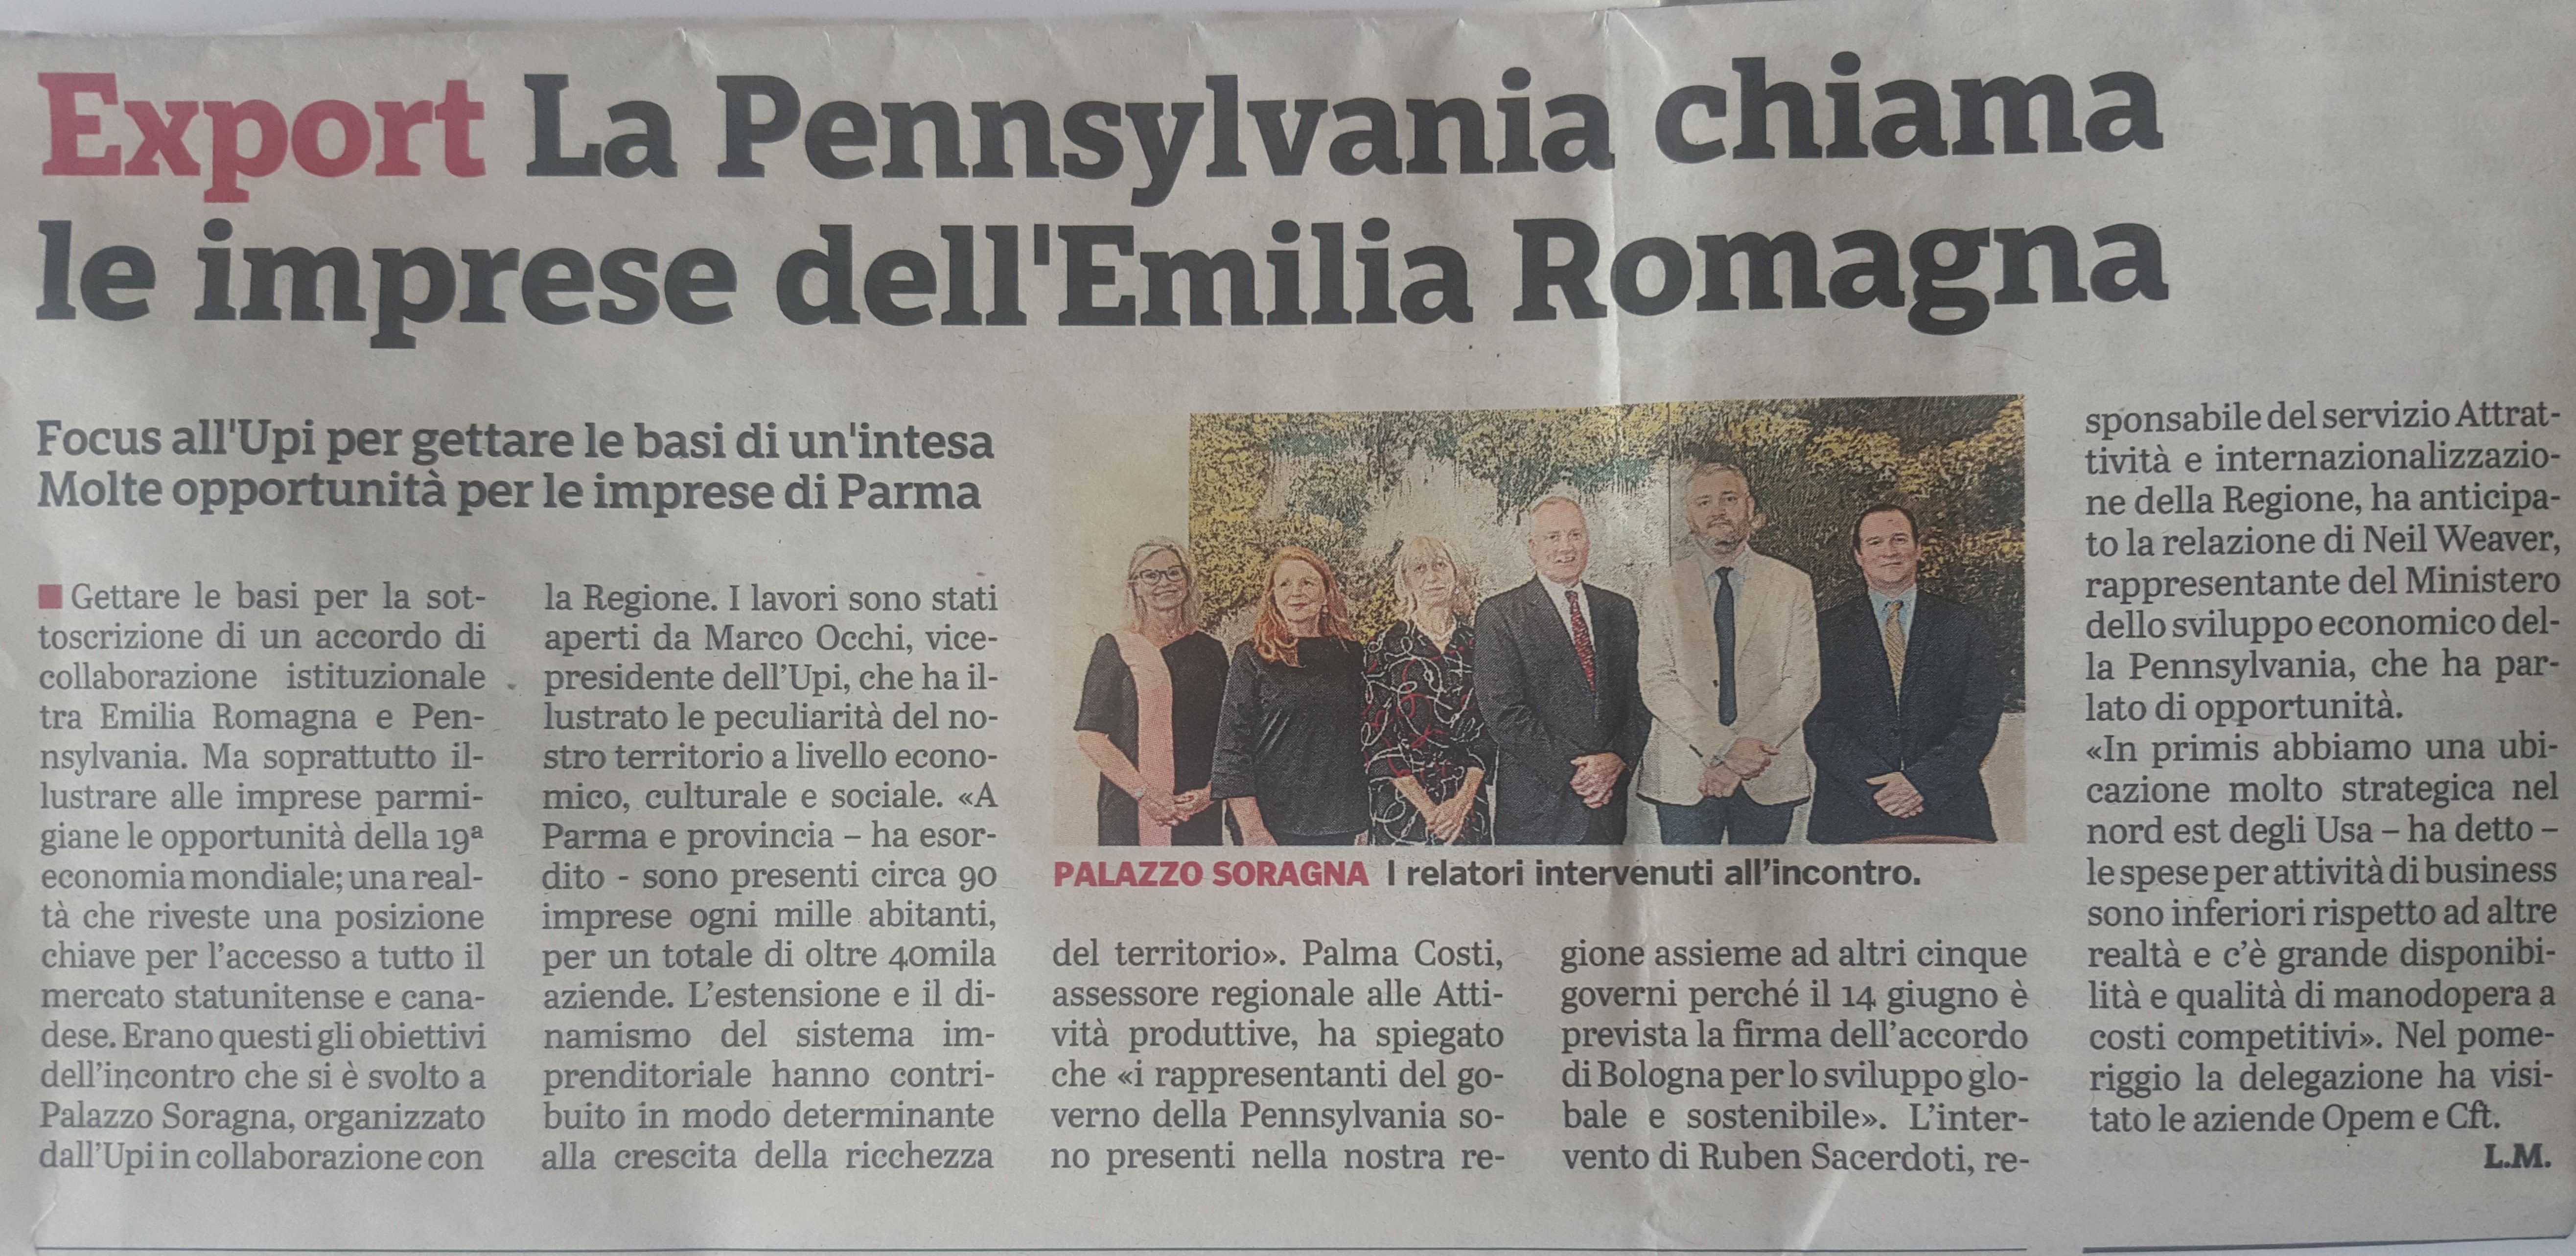 prodotto sfizioSalentino: La Pennsylvania chiama le imprese dell'Emilia Romagna